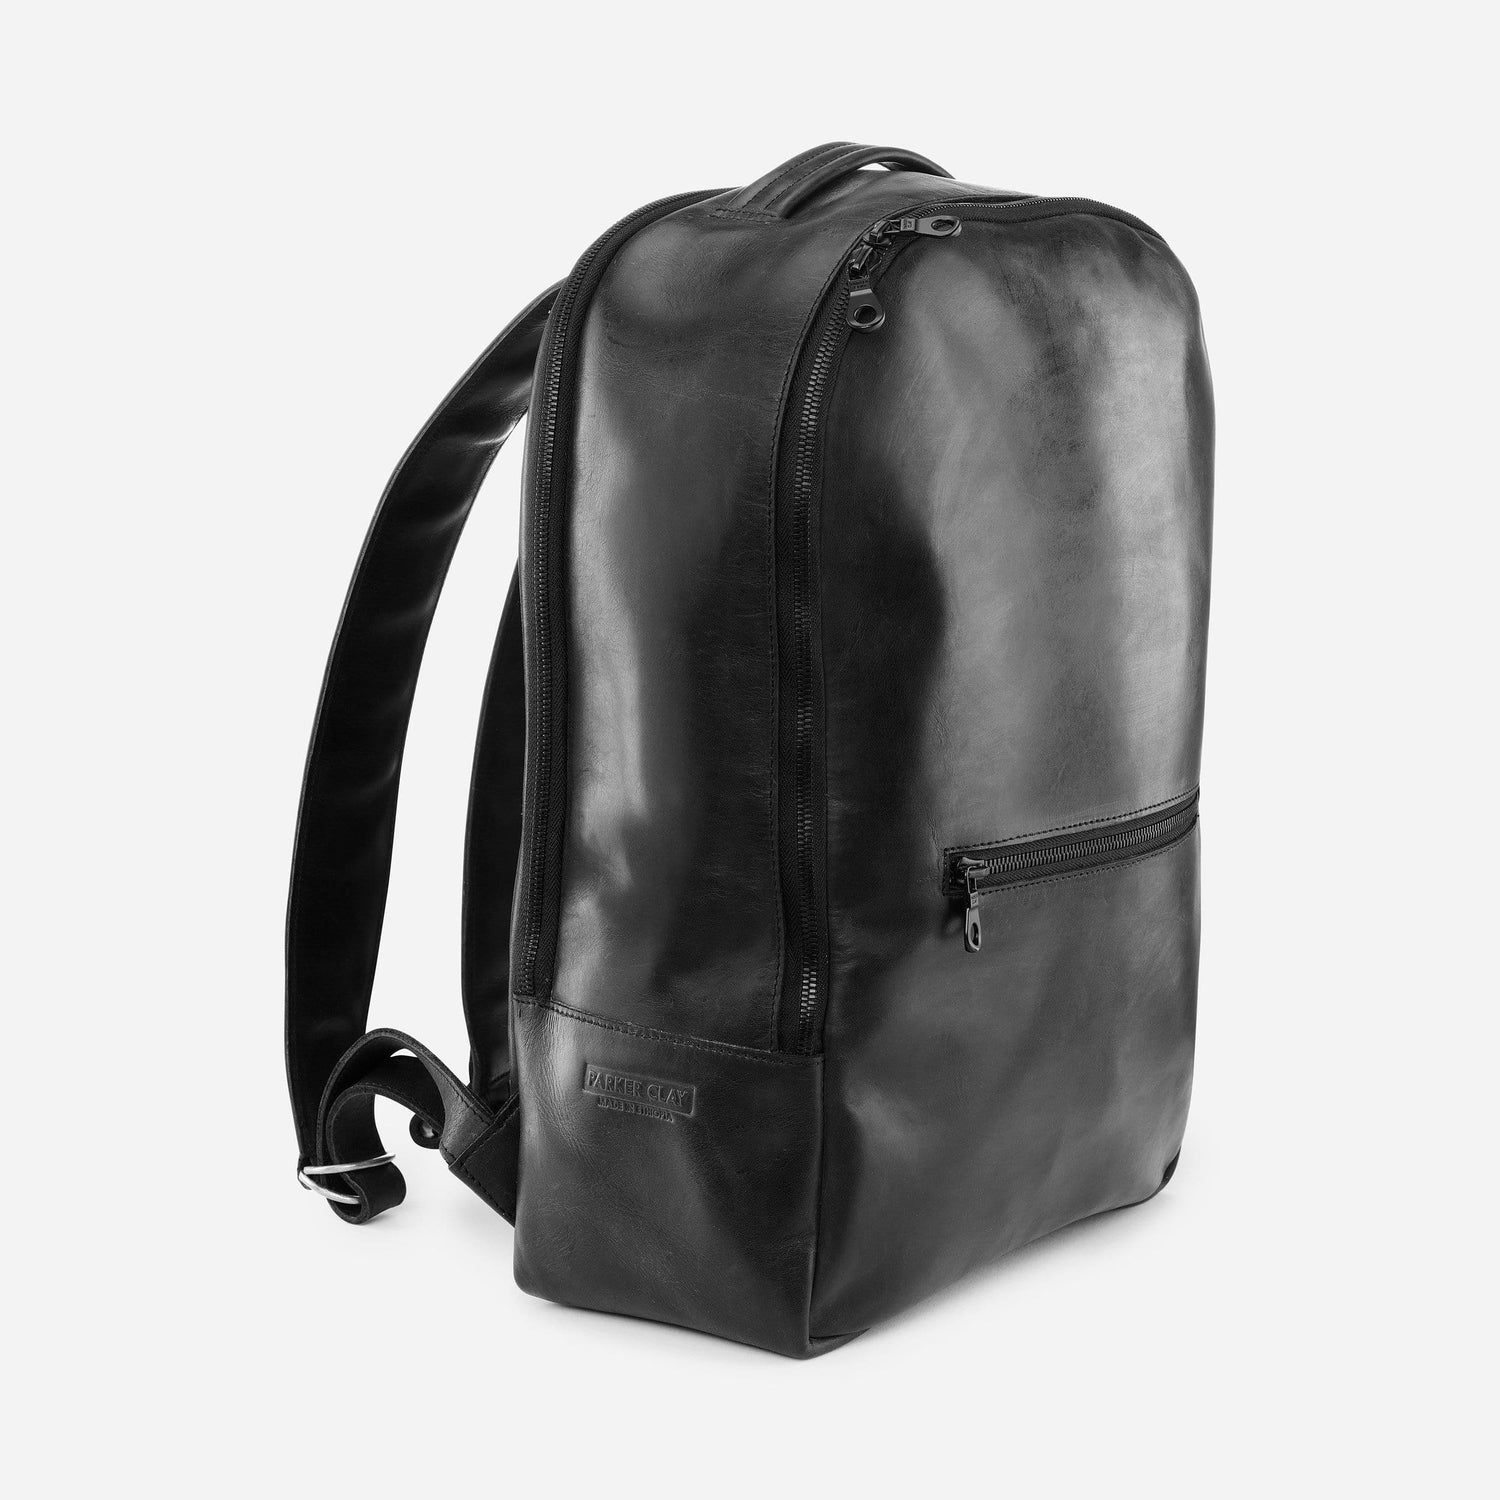 Leather backpack custom white